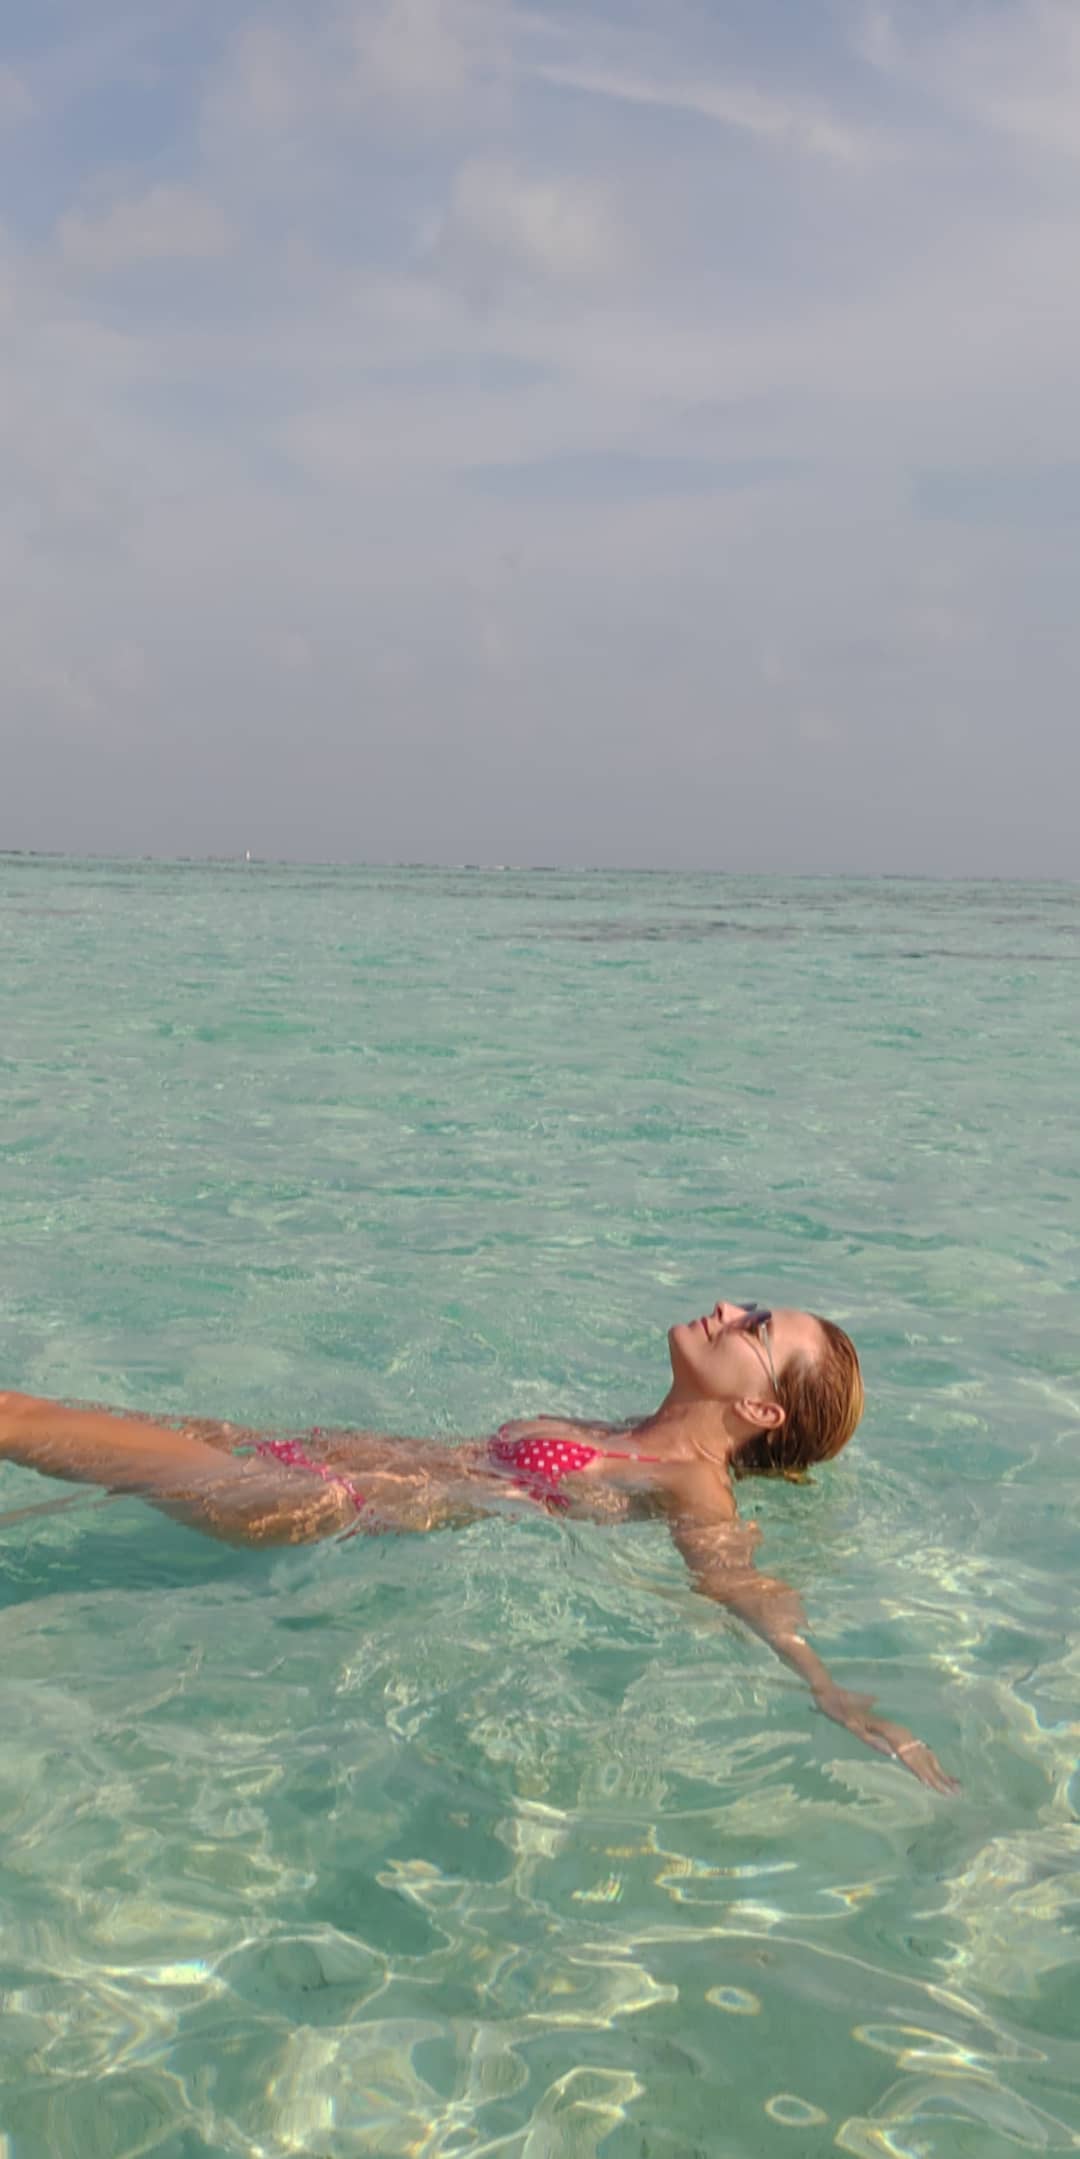 Cristina Ferreira partilha fotografia em biquini das suas férias nas Maldivas